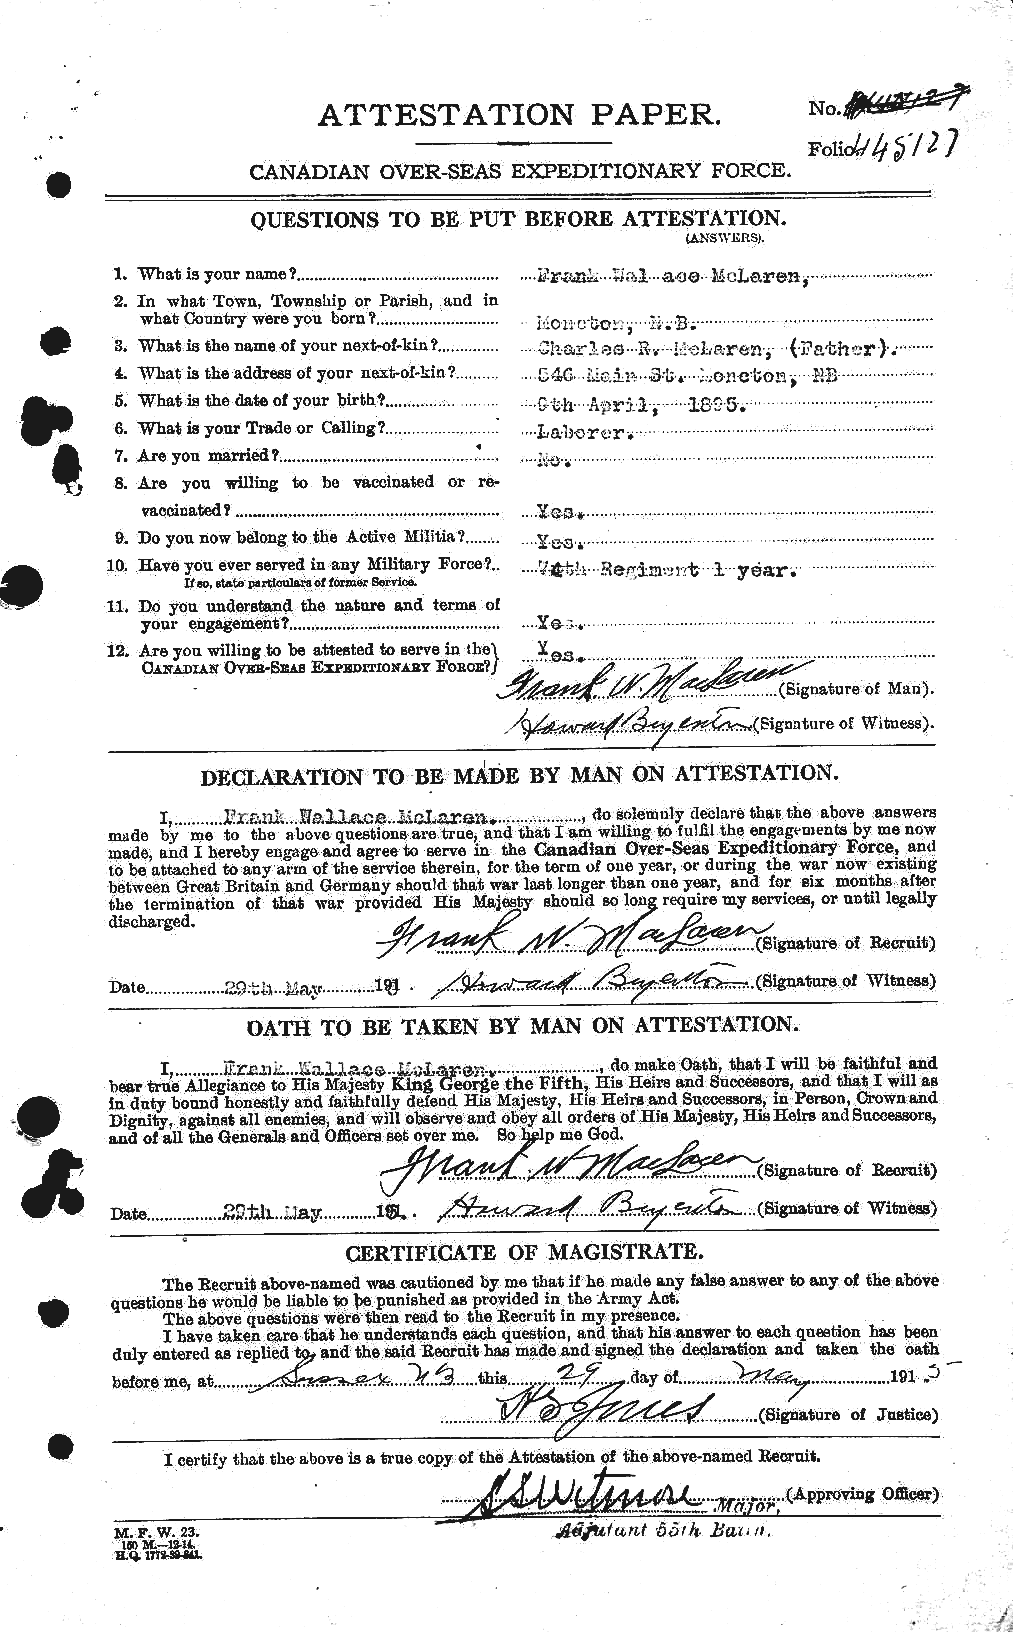 Dossiers du Personnel de la Première Guerre mondiale - CEC 534112a